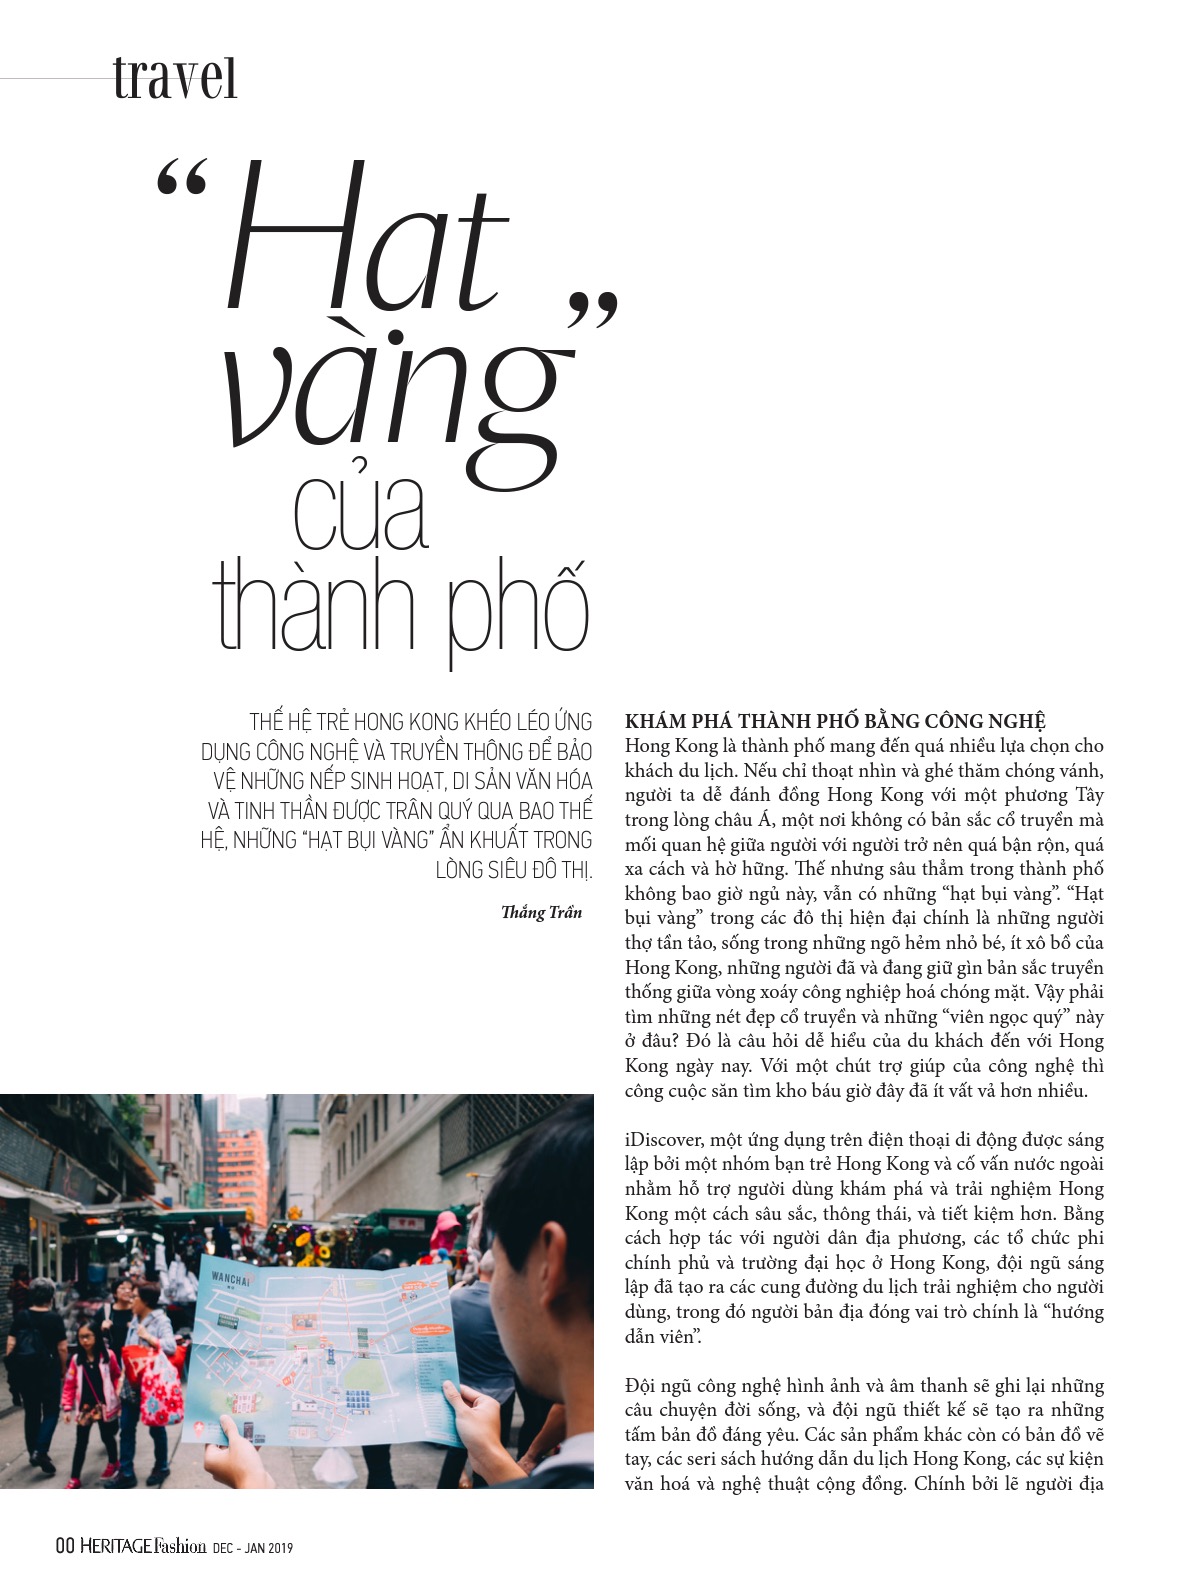 Thang Tran: Thang Tran là một nghệ sĩ đa tài với nhiều thành tựu đáng kinh ngạc trong lĩnh vực nghệ thuật số. Anh là một trong những người tiên phong đưa nghệ thuật số vào những sản phẩm thực tế. Xem ngay hình ảnh của Thang Tran để hiểu thêm về những tác phẩm nghệ thuật đầy sáng tạo mà anh đã tạo ra.